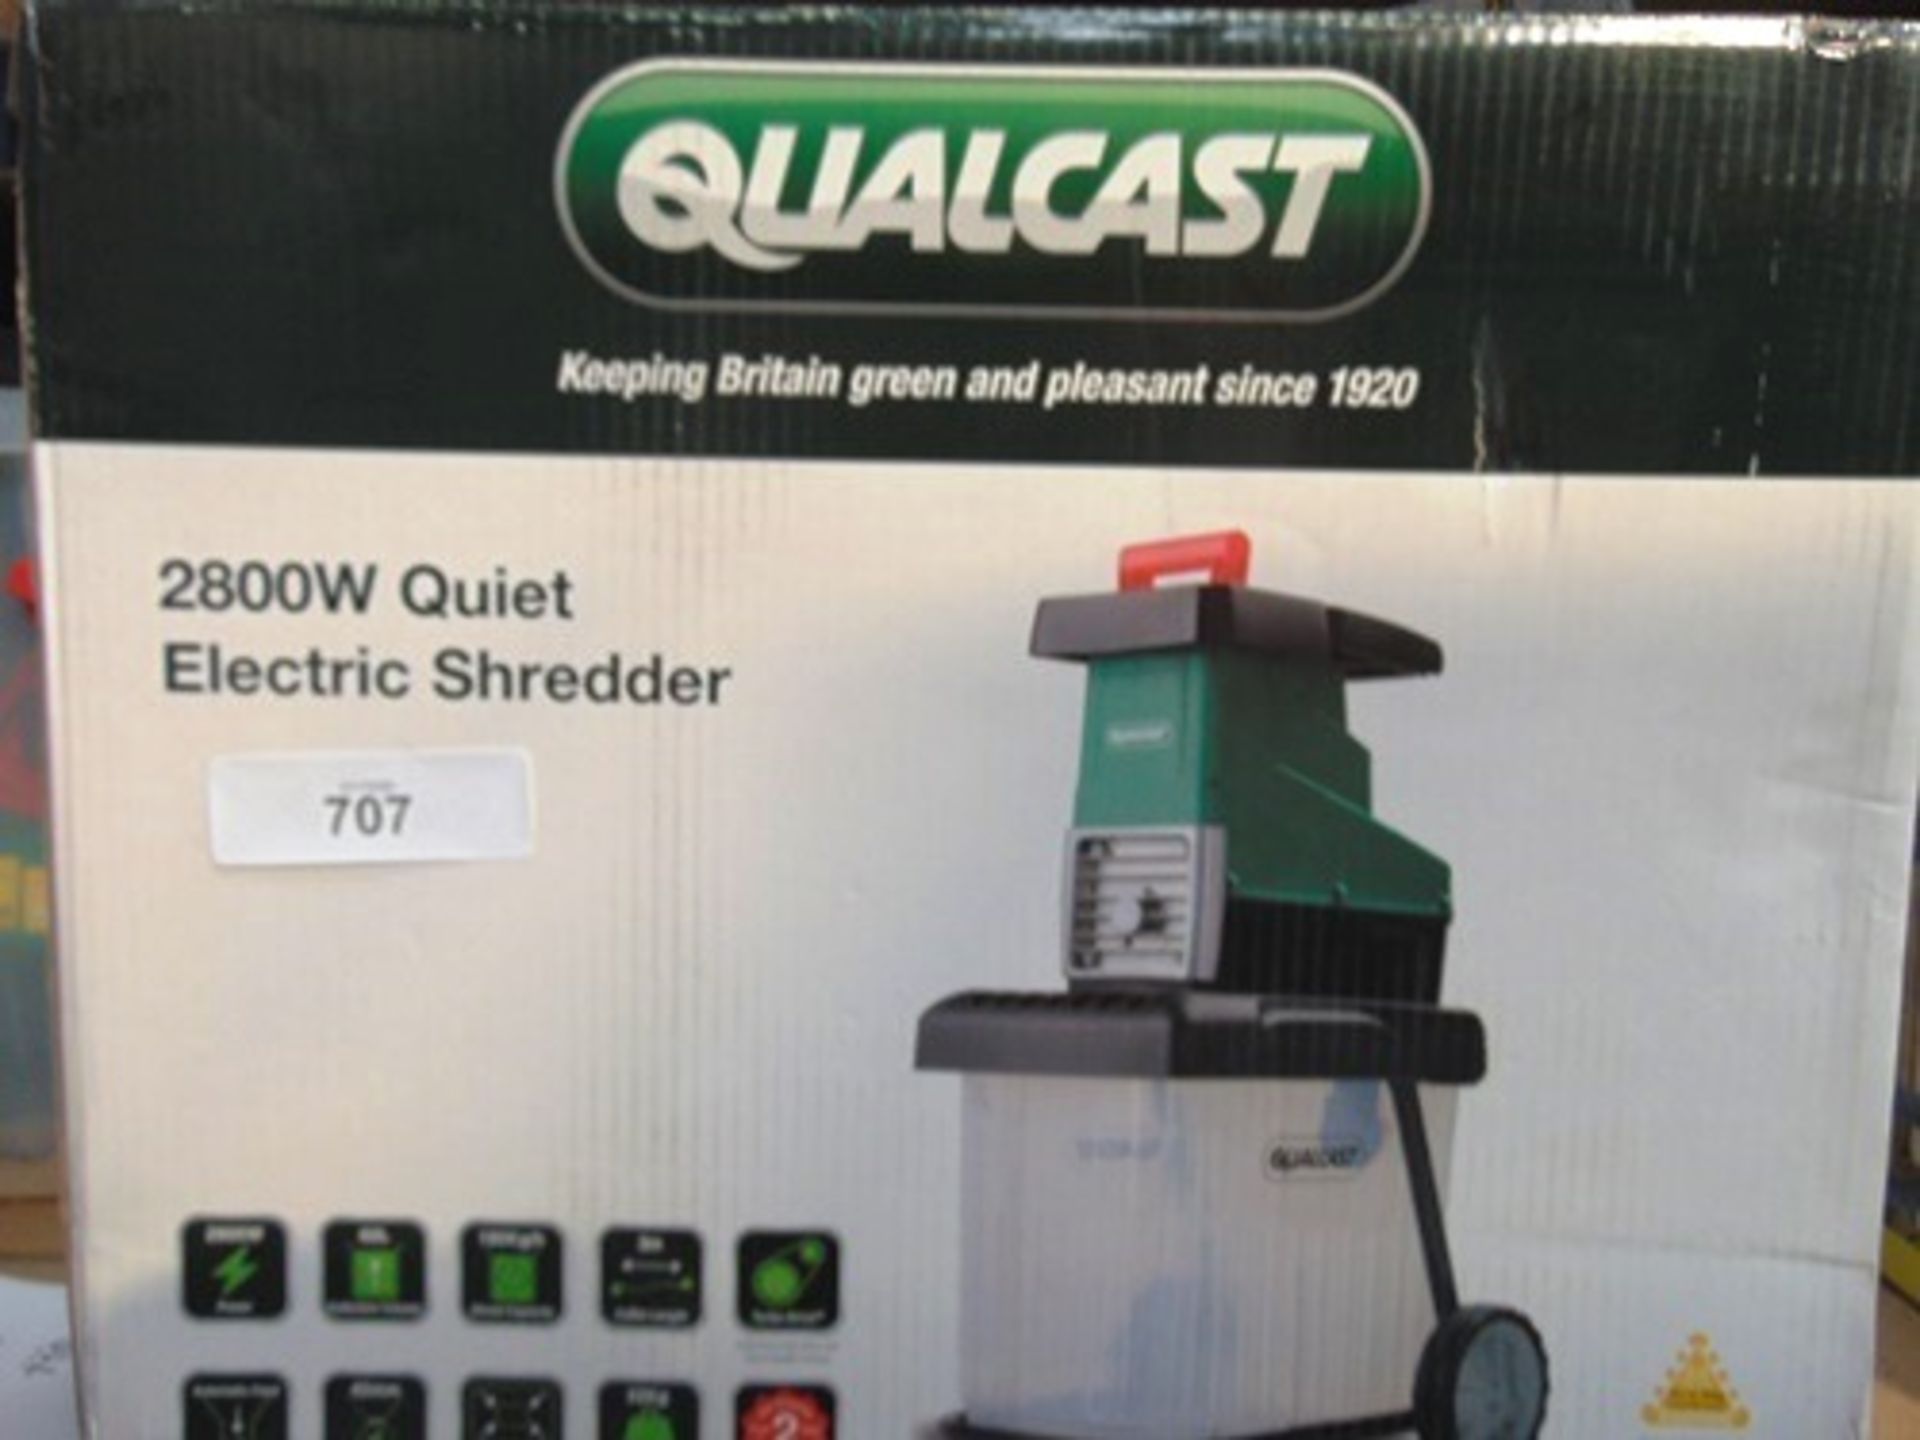 1 x Qualcast quiet garden shredder, model SDS2810, 2800w, - new in box (GS16)